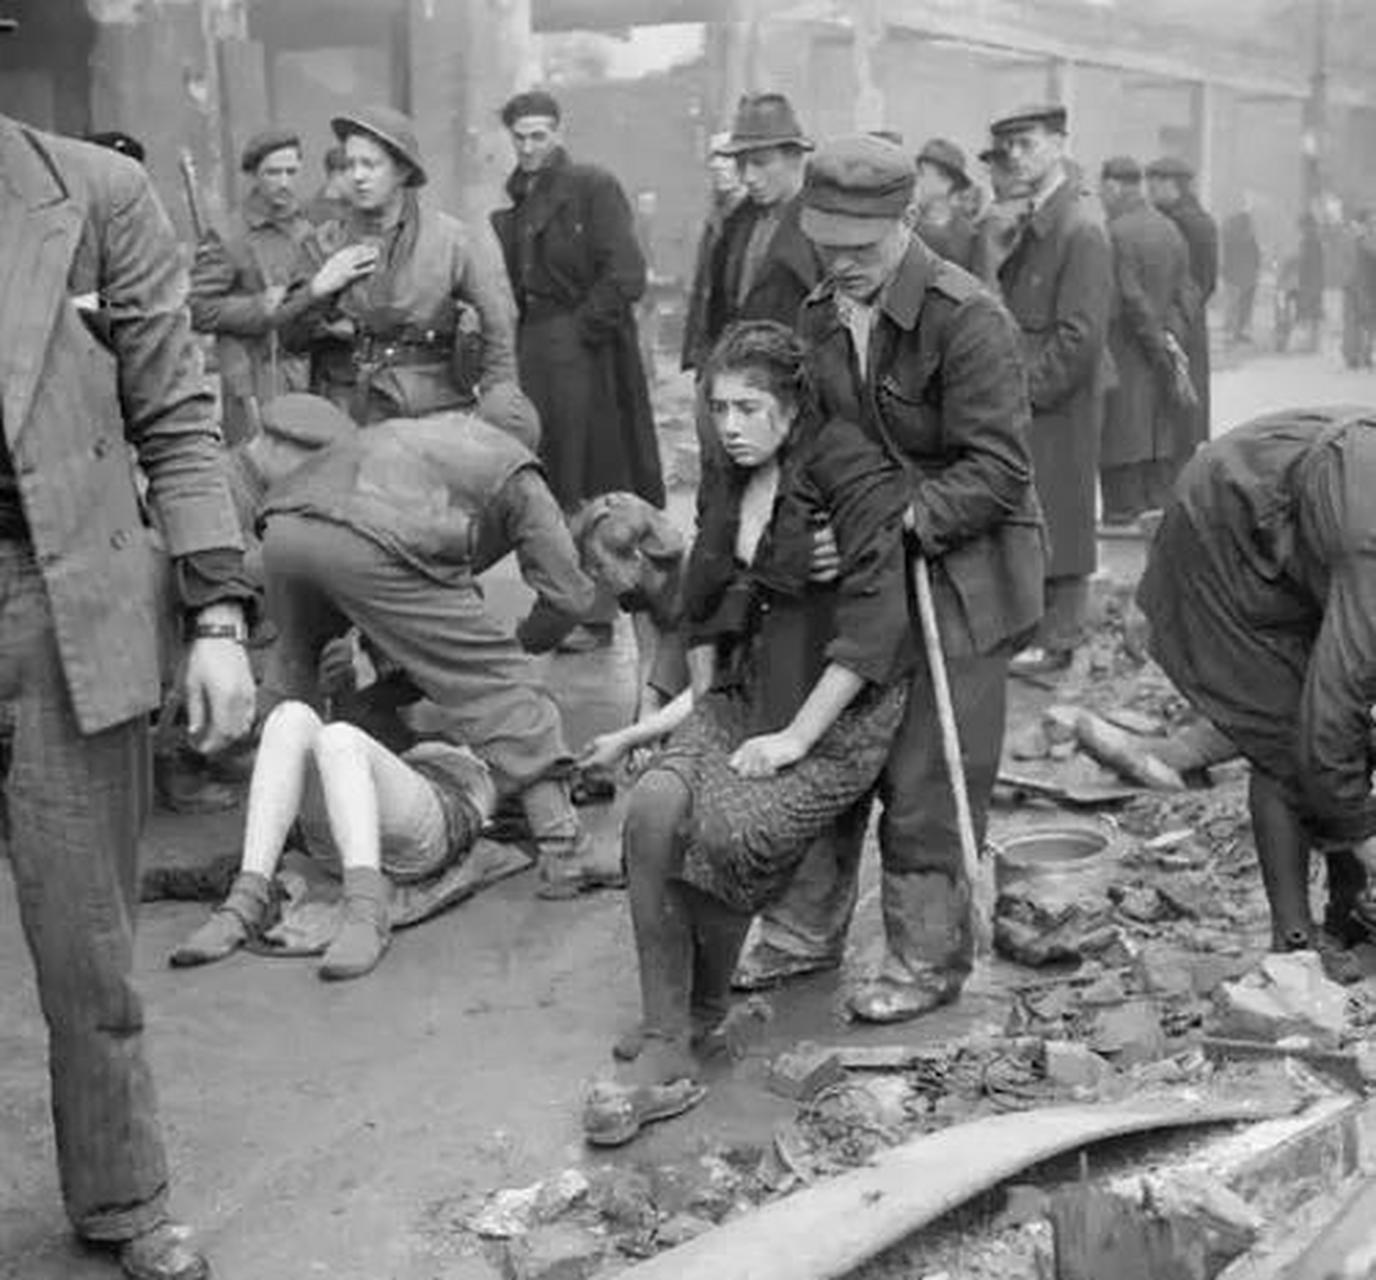 1945年4月,苏军攻占柏林,女人们成了这场胜利的战利品,苏军士兵眼里